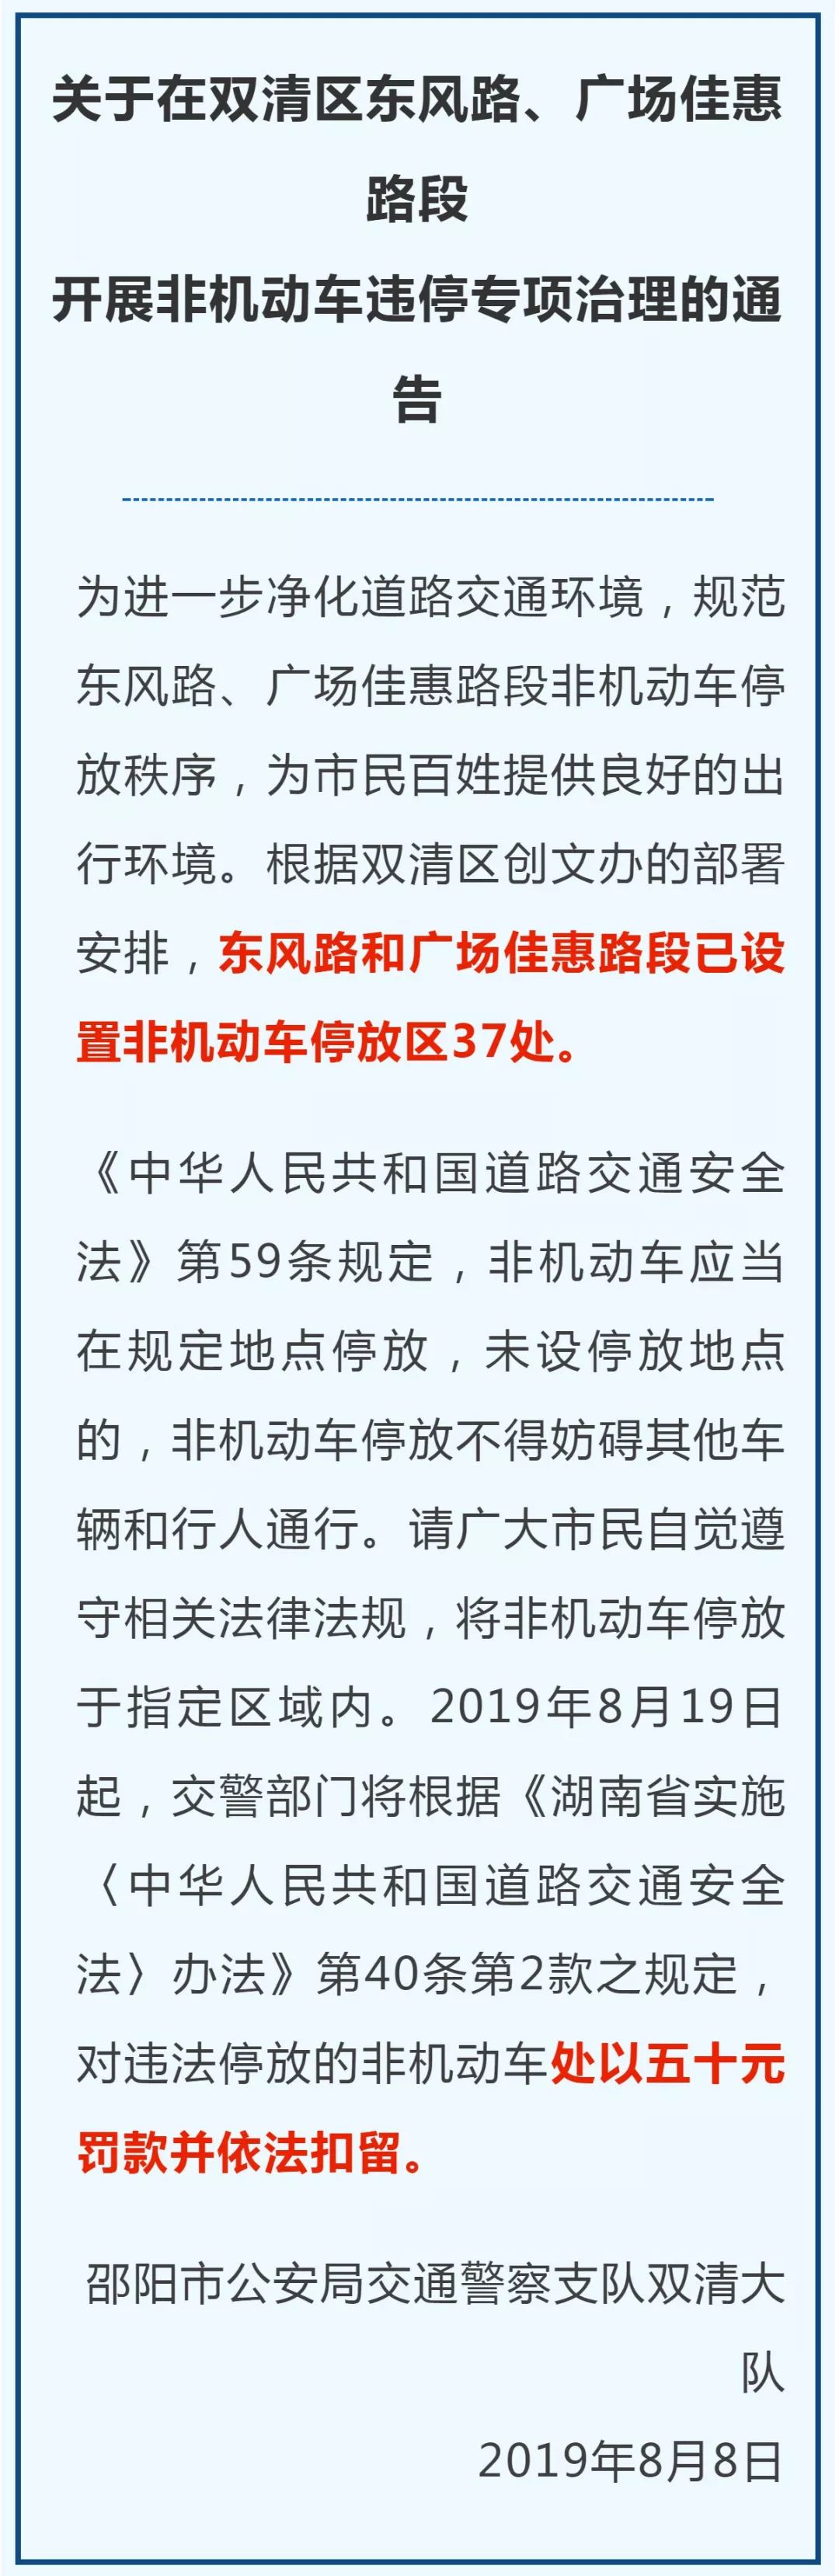 关于在双清区东风路,广场佳惠路段开展非机动车违停专项治理的通告